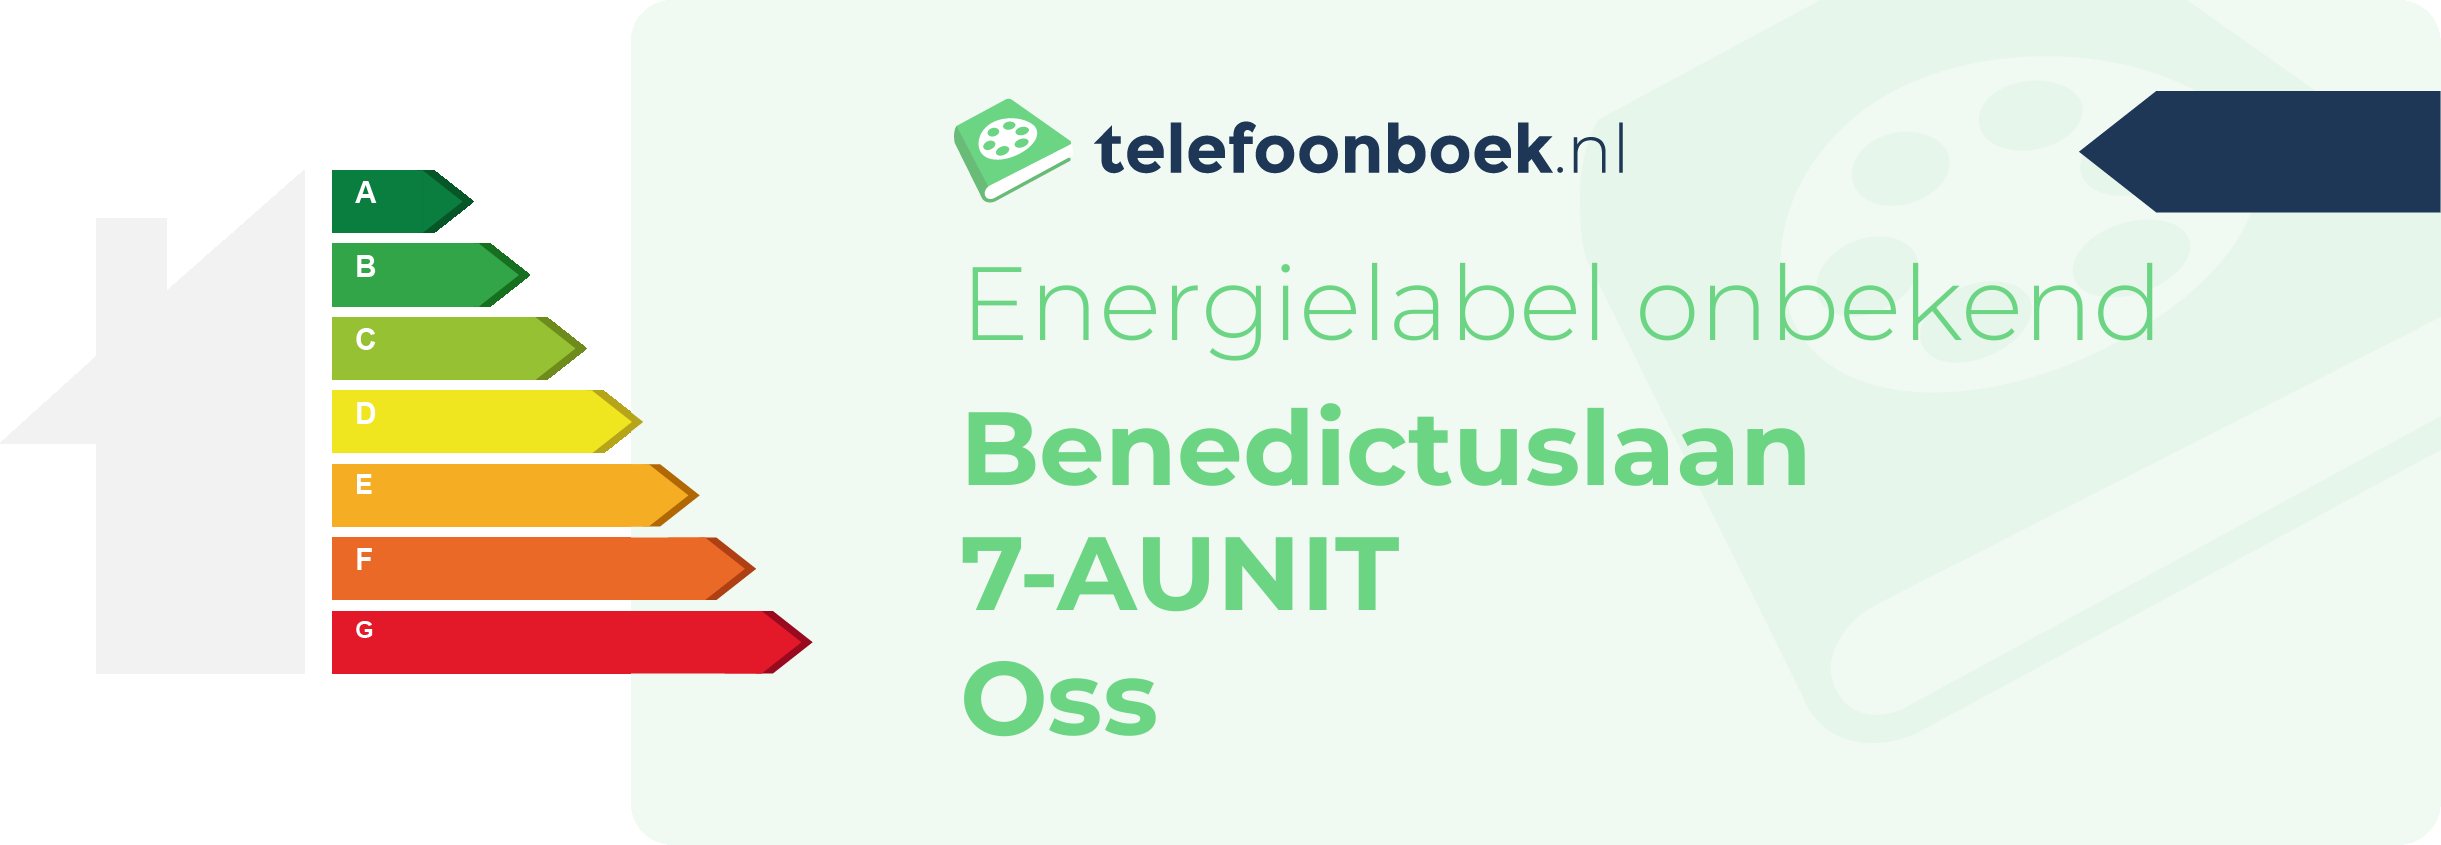 Energielabel Benedictuslaan 7-AUNIT Oss